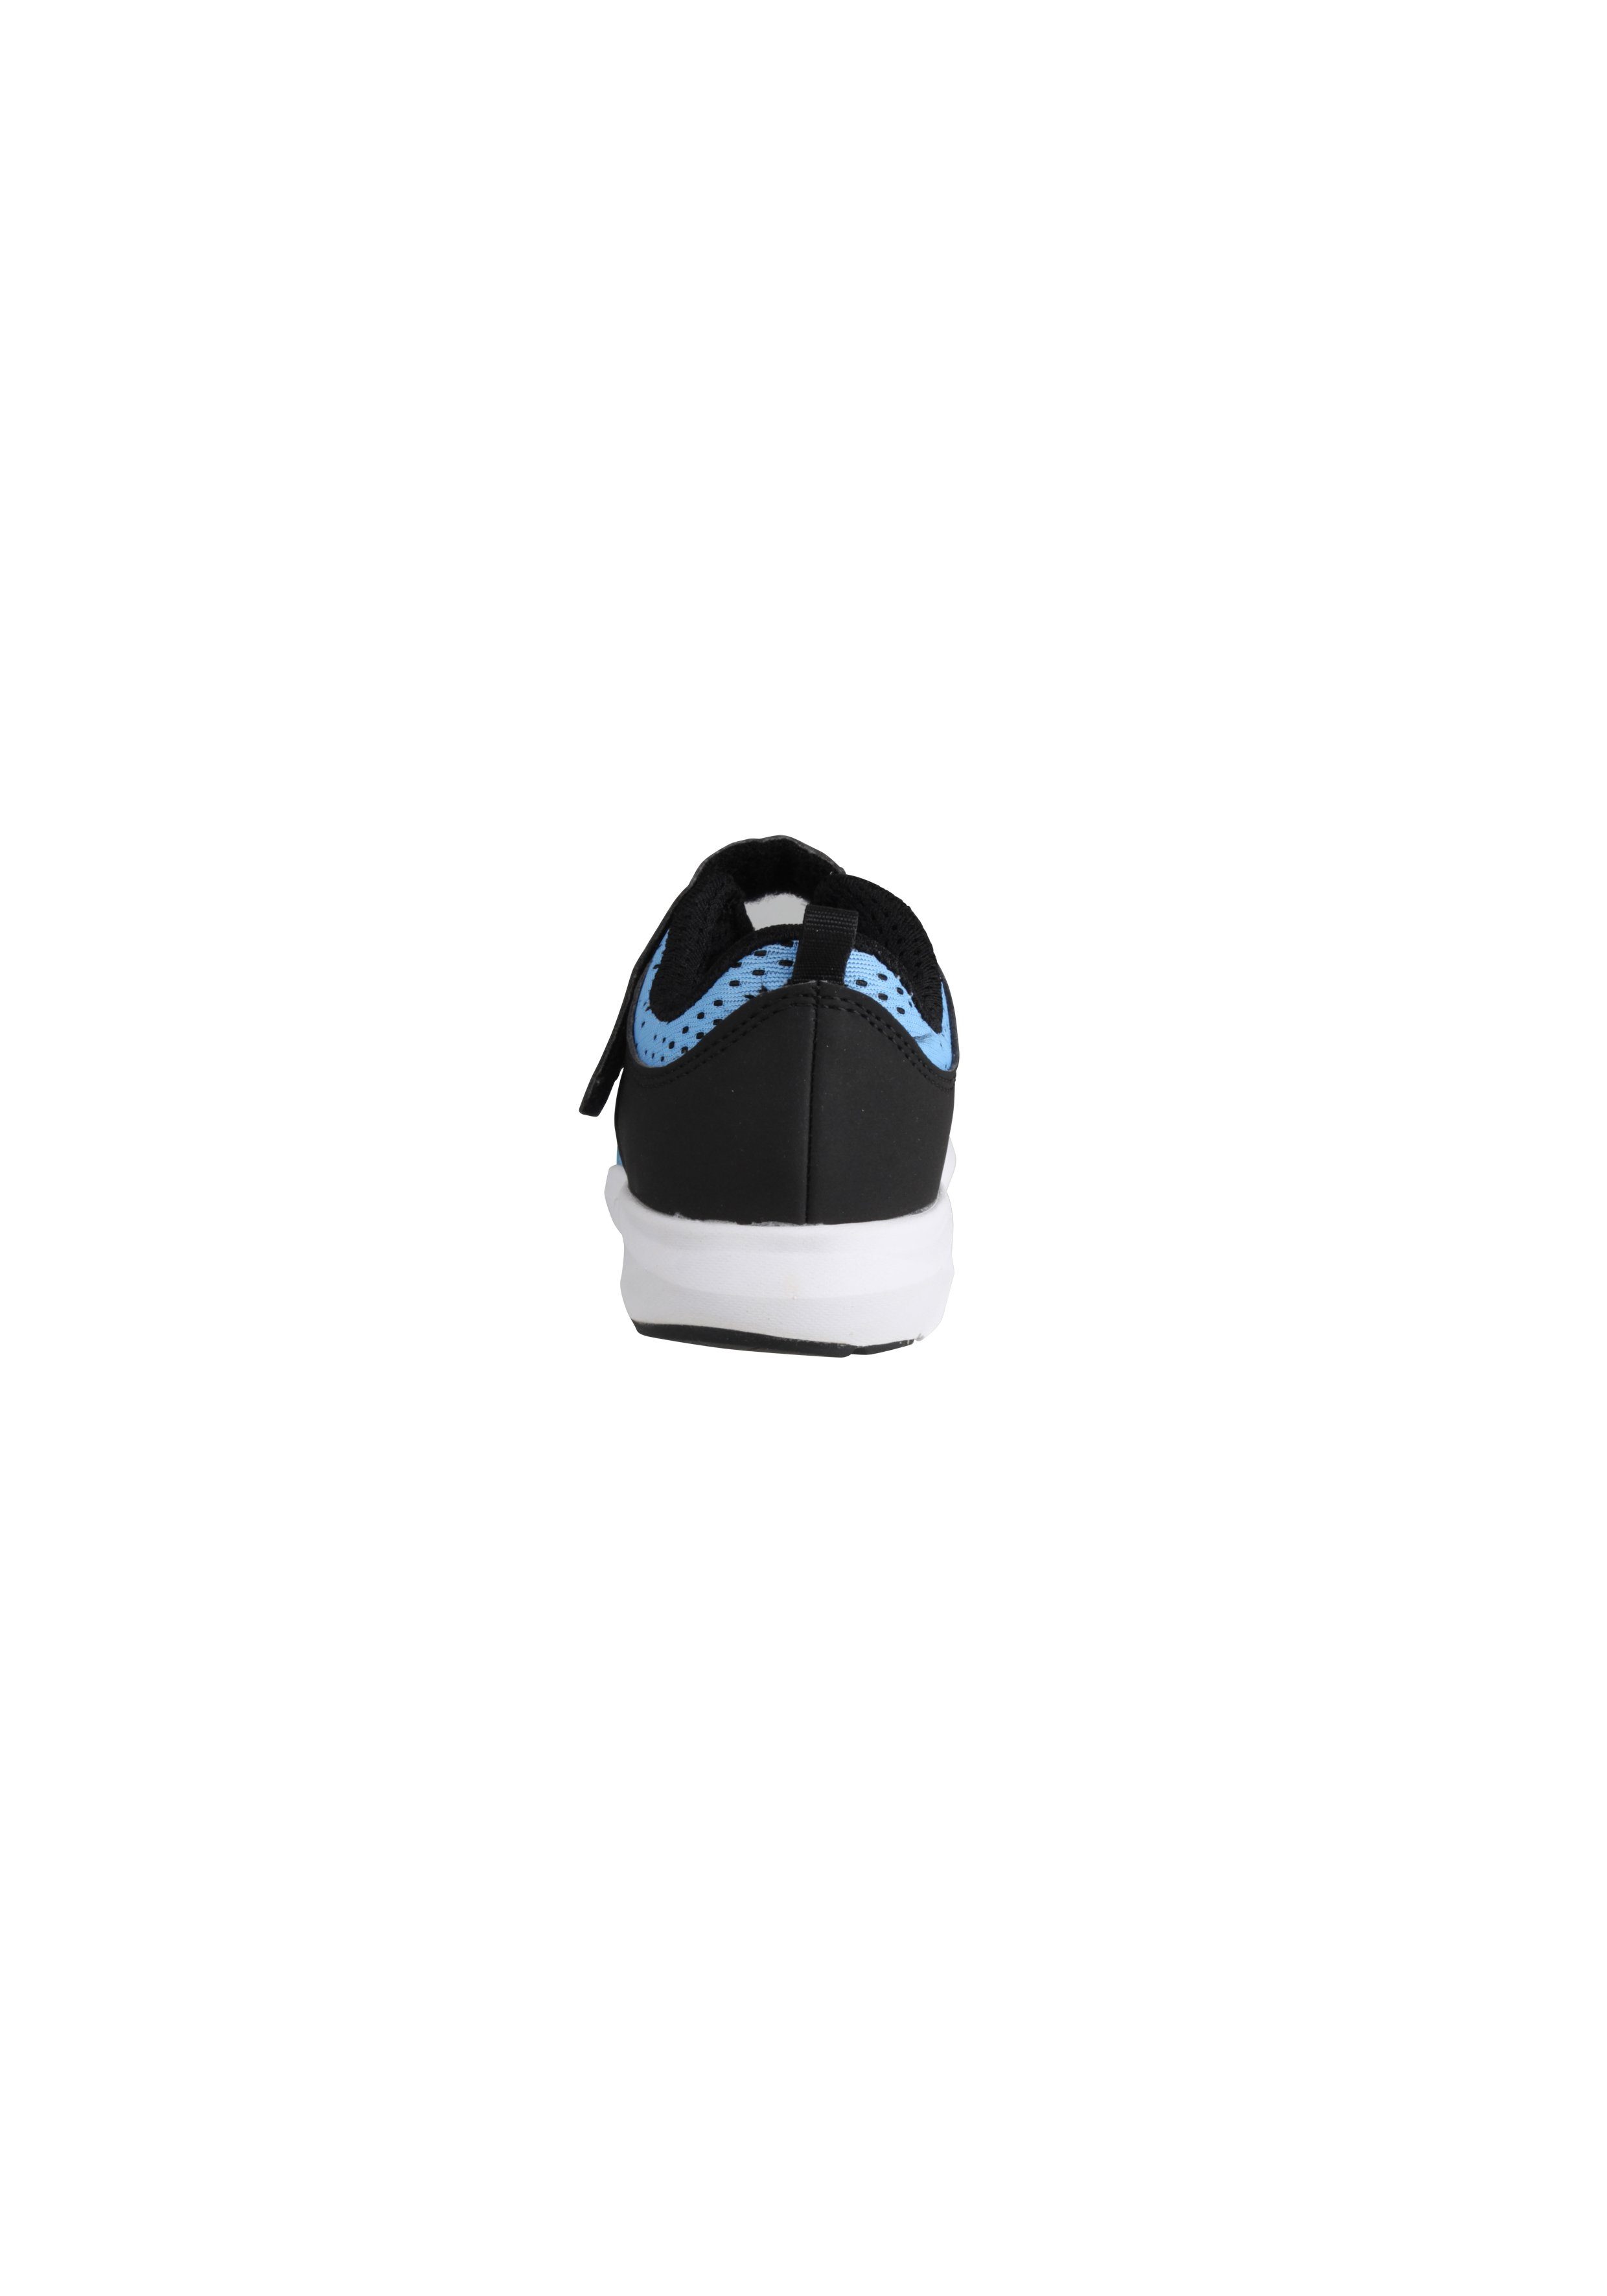 Alpina Sports Fun Sneaker mit verstärkter Ferse blau-schwarz